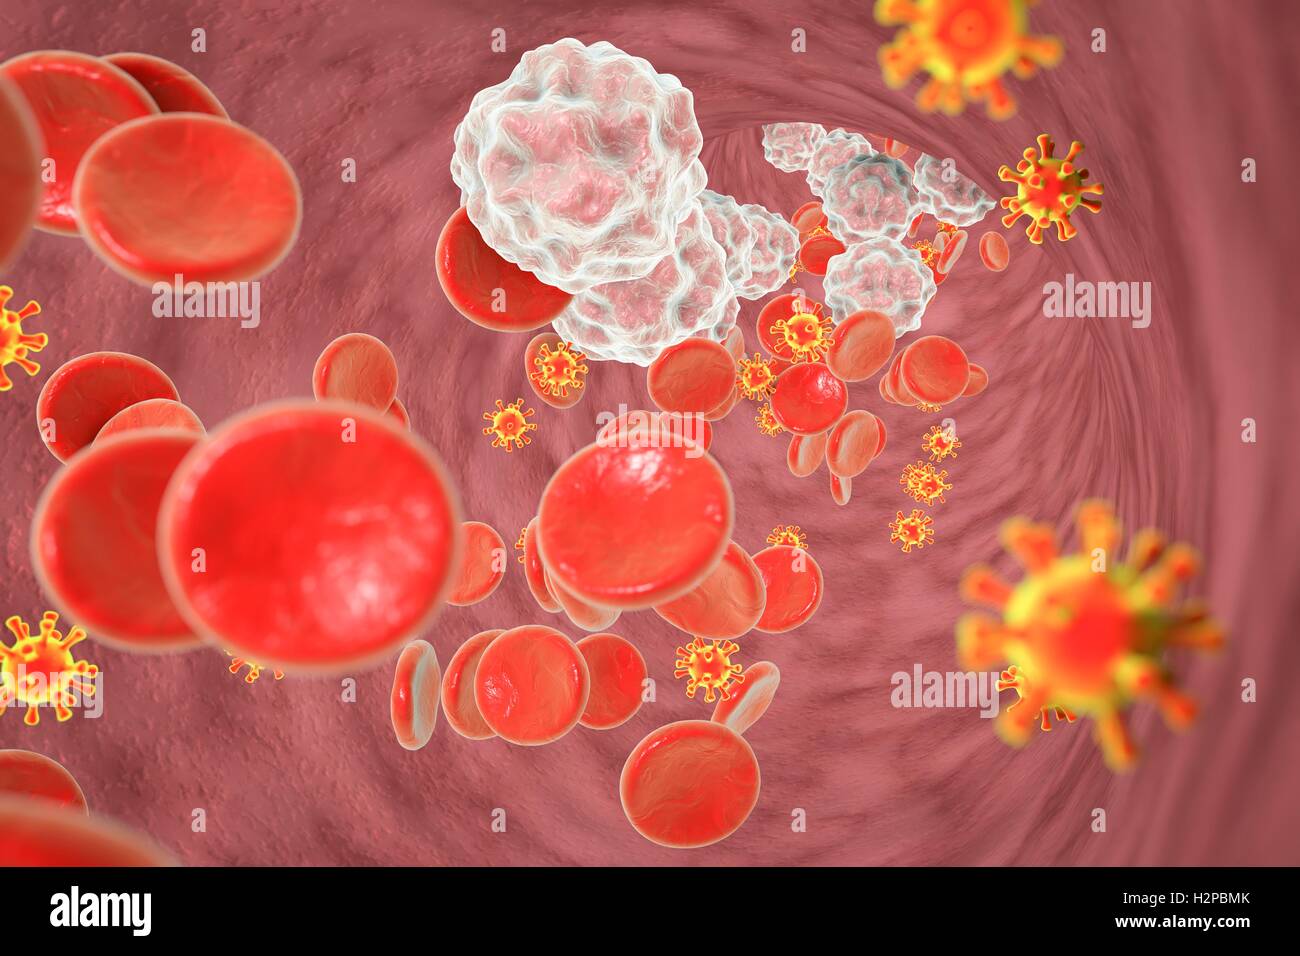 Illustrazione di Virus di Immunodeficienza Umana (HIV) nel sangue. L' HIV è un virus di RNA dalla famiglia Retroviridae che causa la sindrome da immunodeficienza acquisita (AIDS). Foto Stock